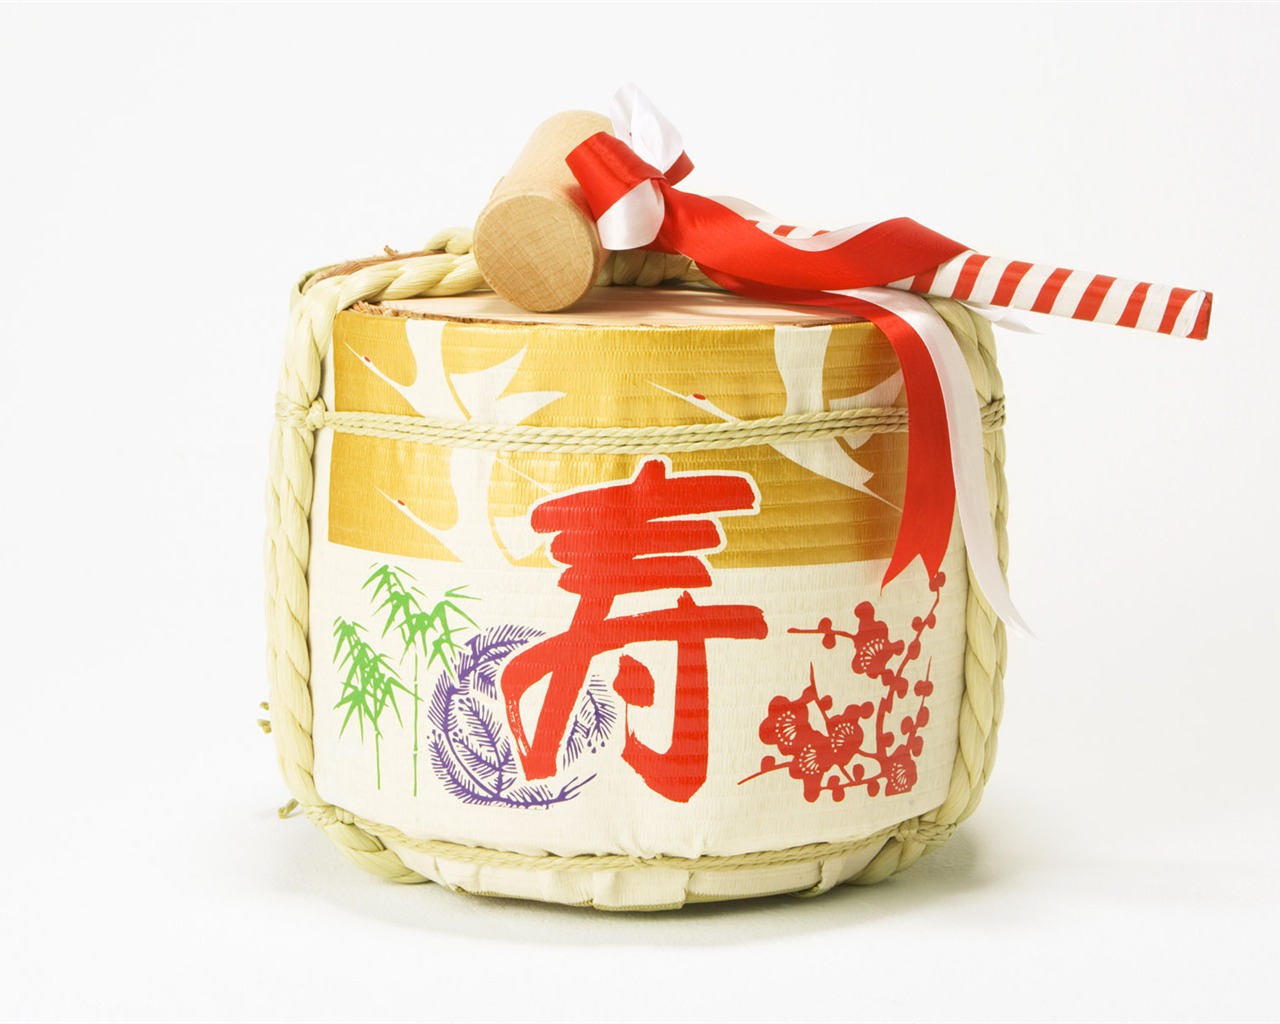 Fondos de año nuevo japonés Cultura (2) #12 - 1280x1024